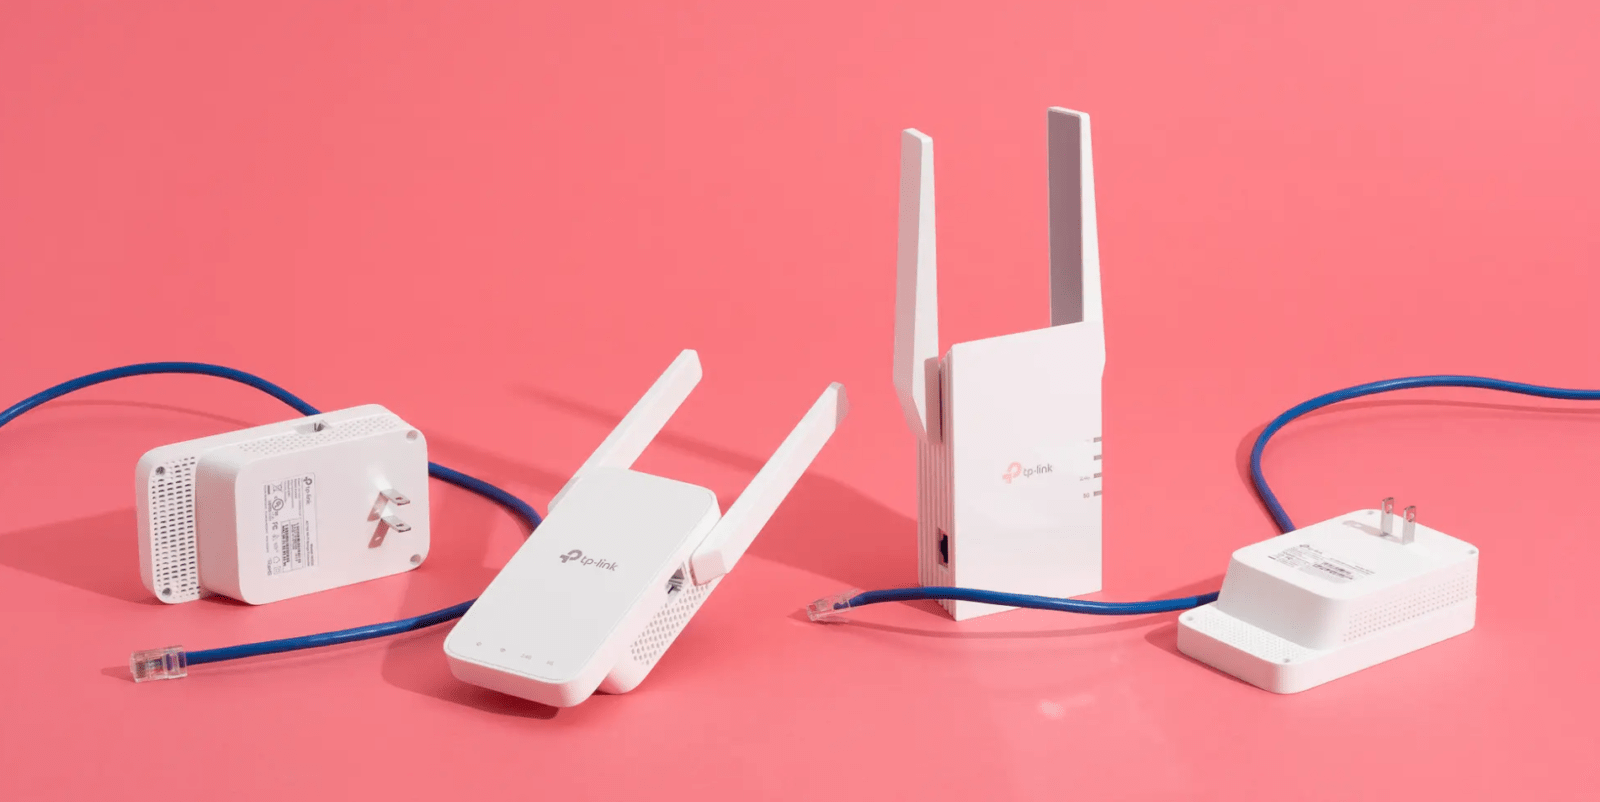 3 способа создать Wi-Fi сеть без роутера